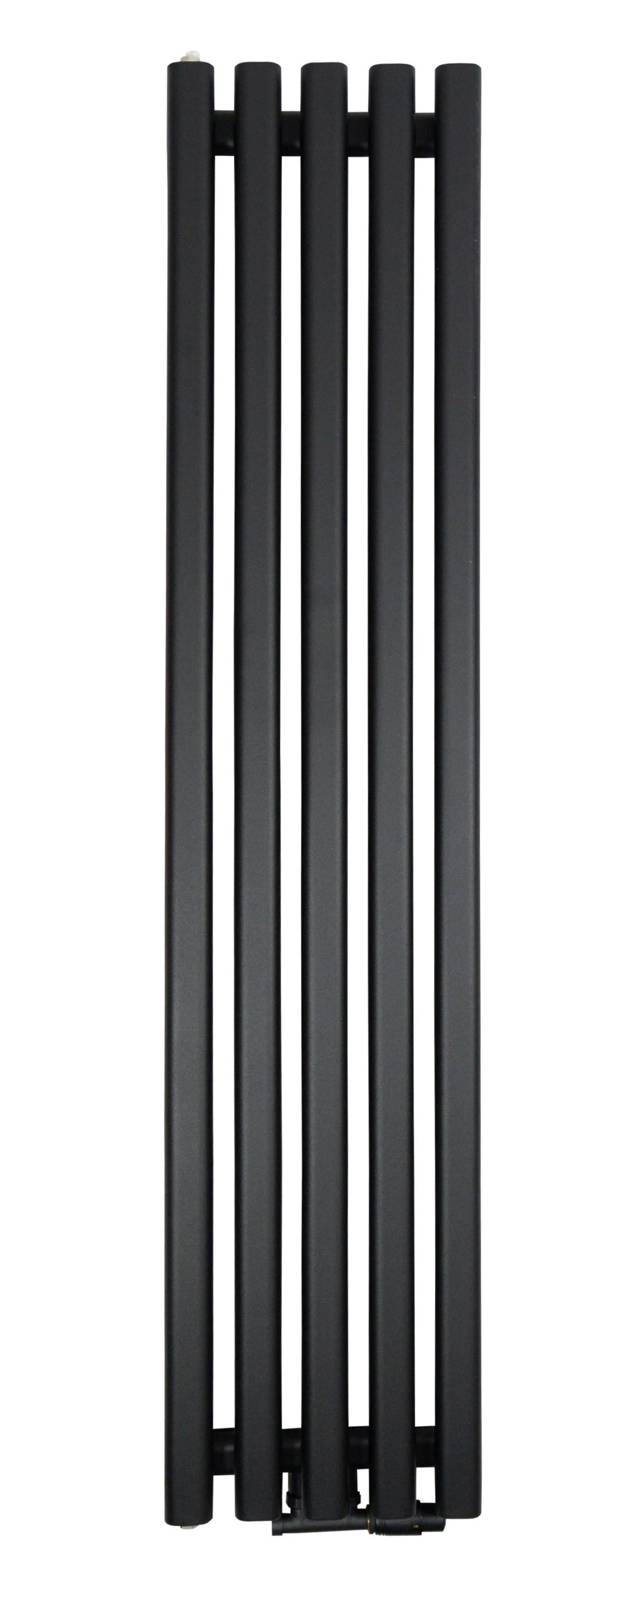 ZVR18033B - Czarny pionowy grzejnik 180/33